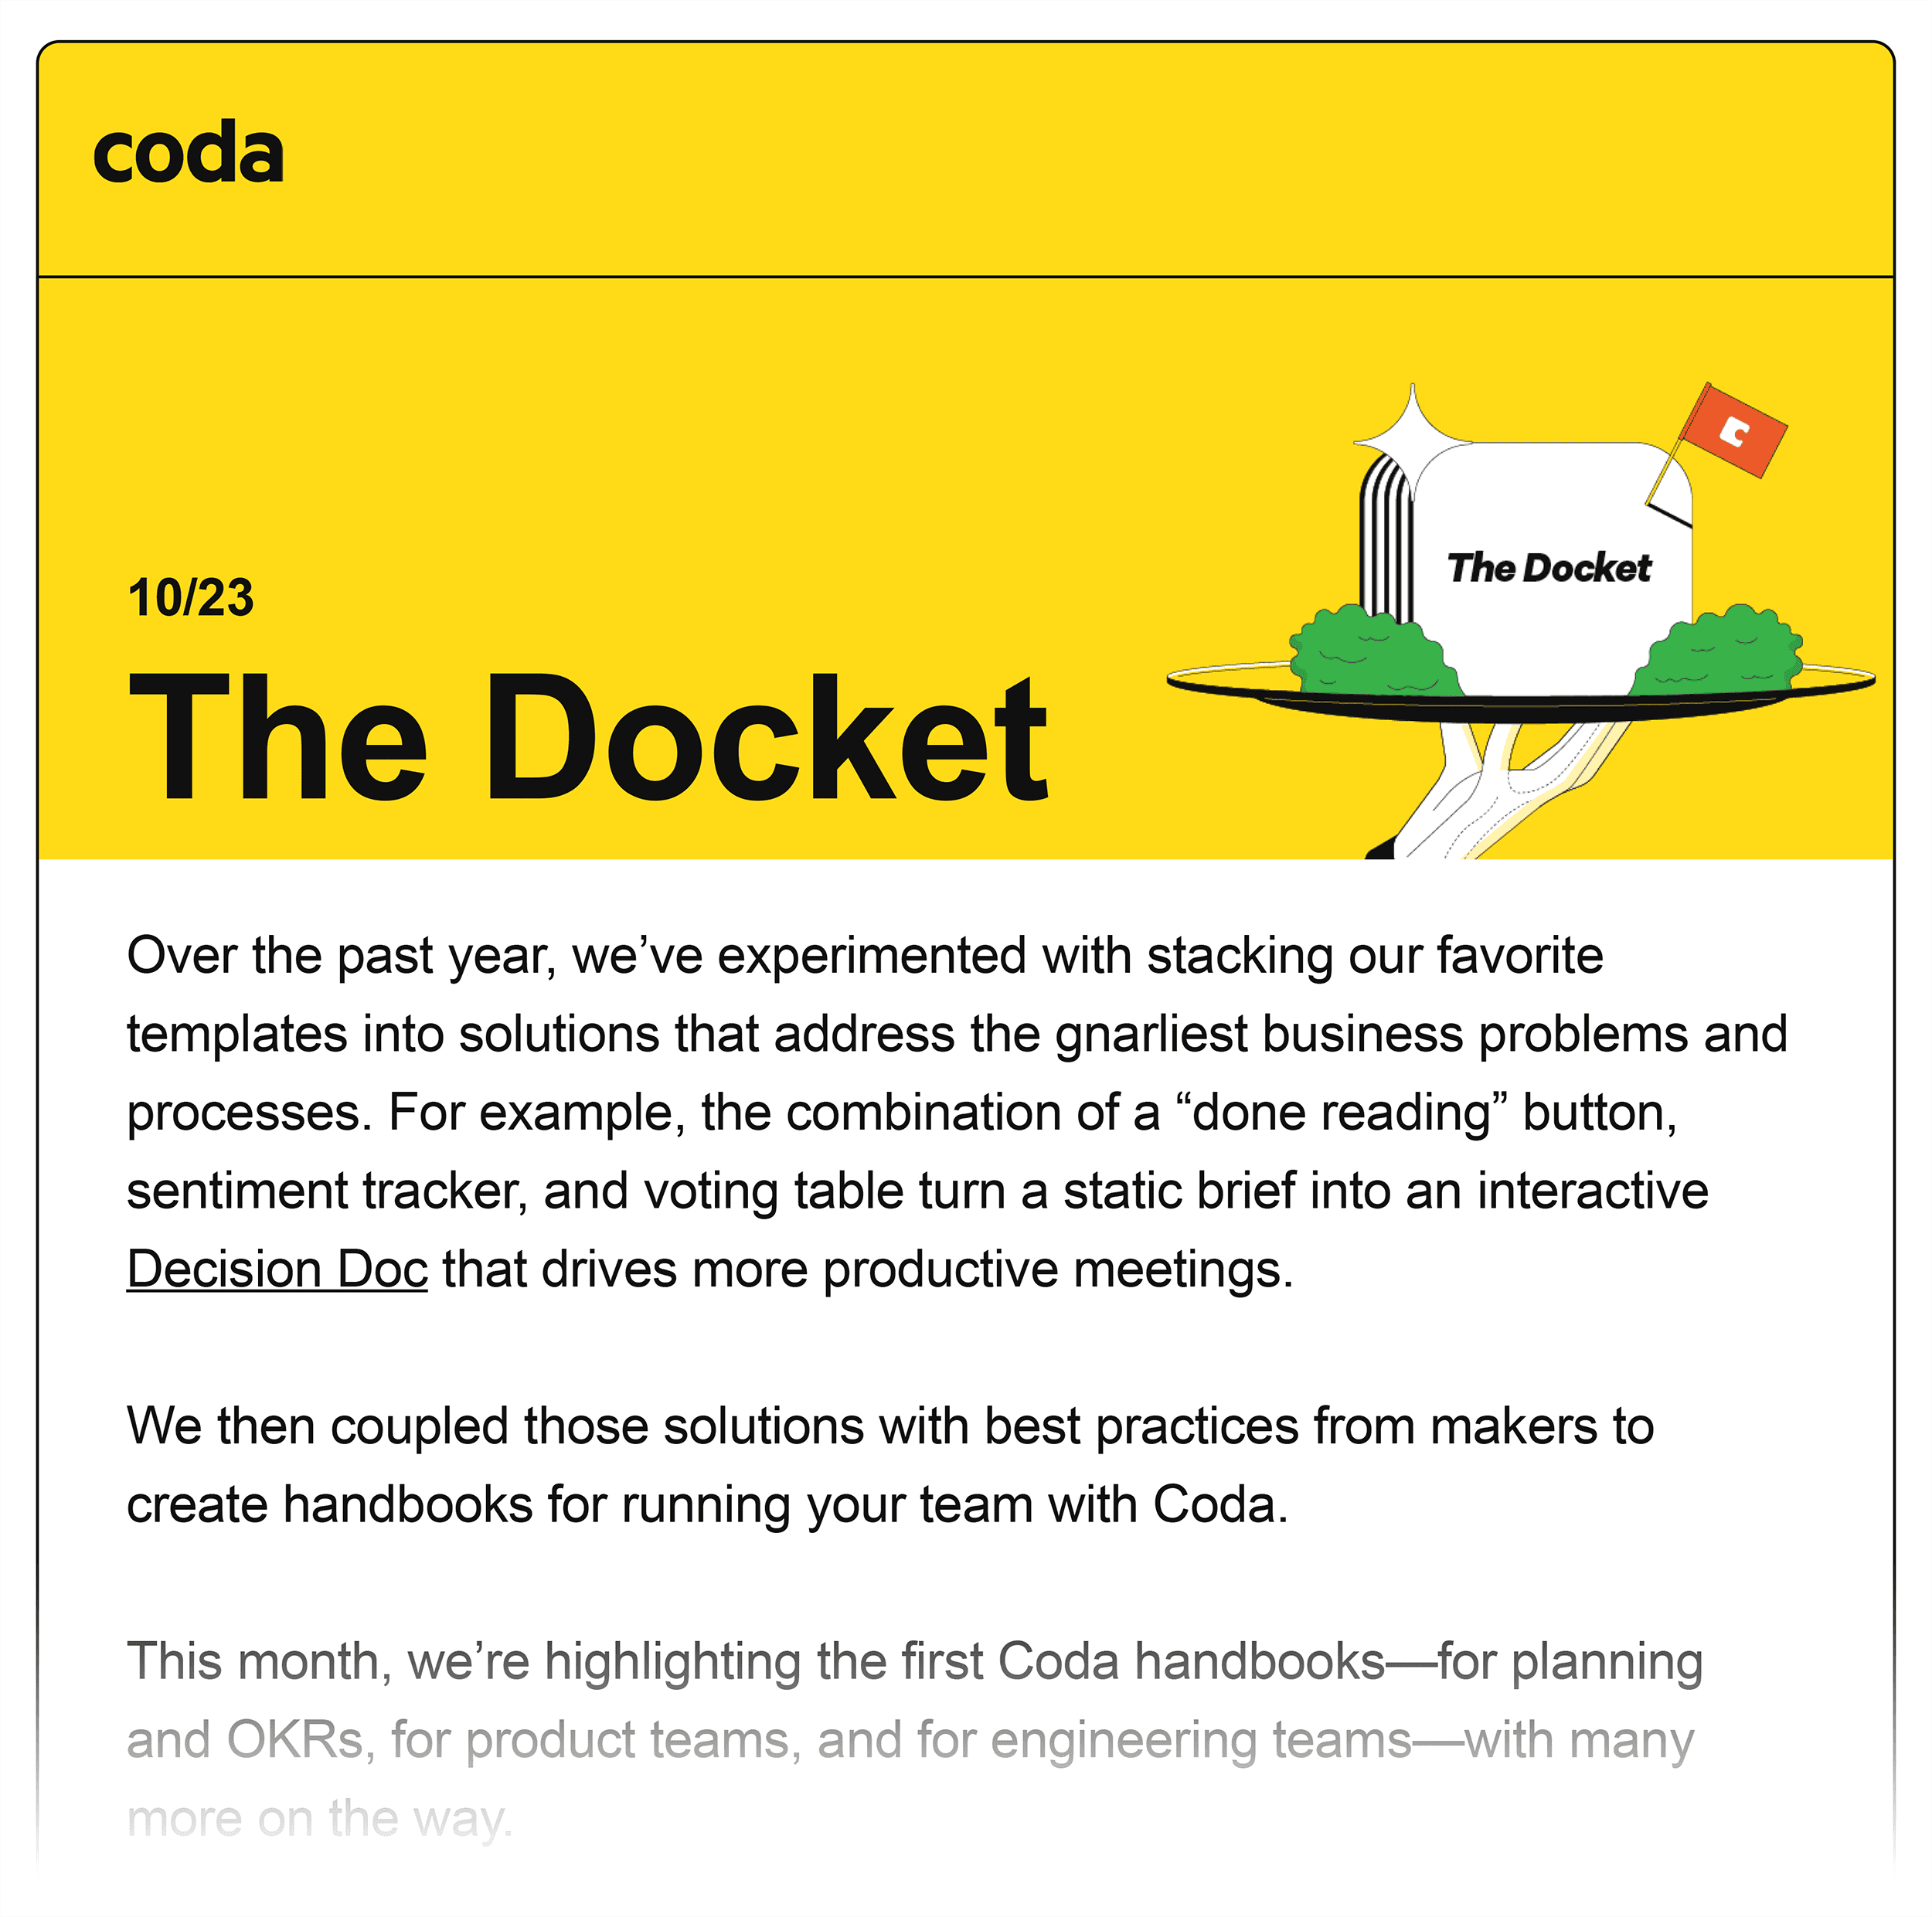 Coda – The Docket